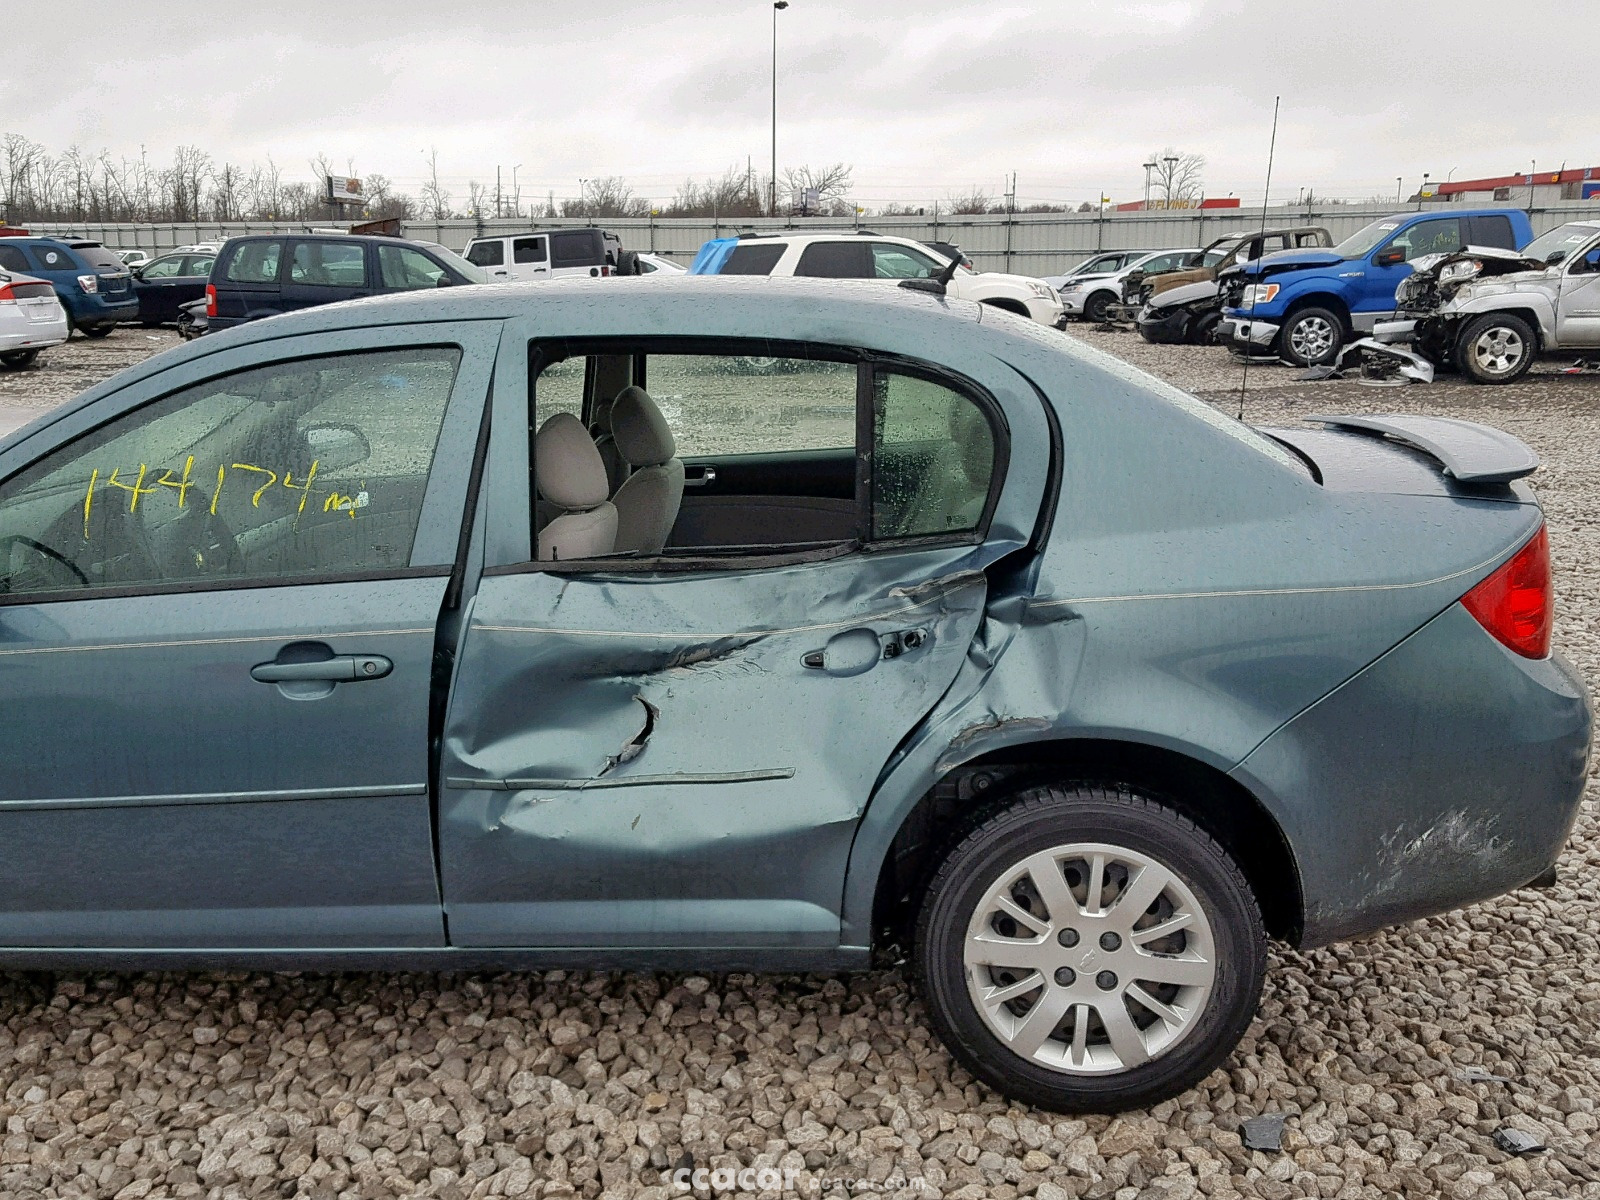 2010 Chevrolet Cobalt LT | Salvage & Damaged Cars for Sale